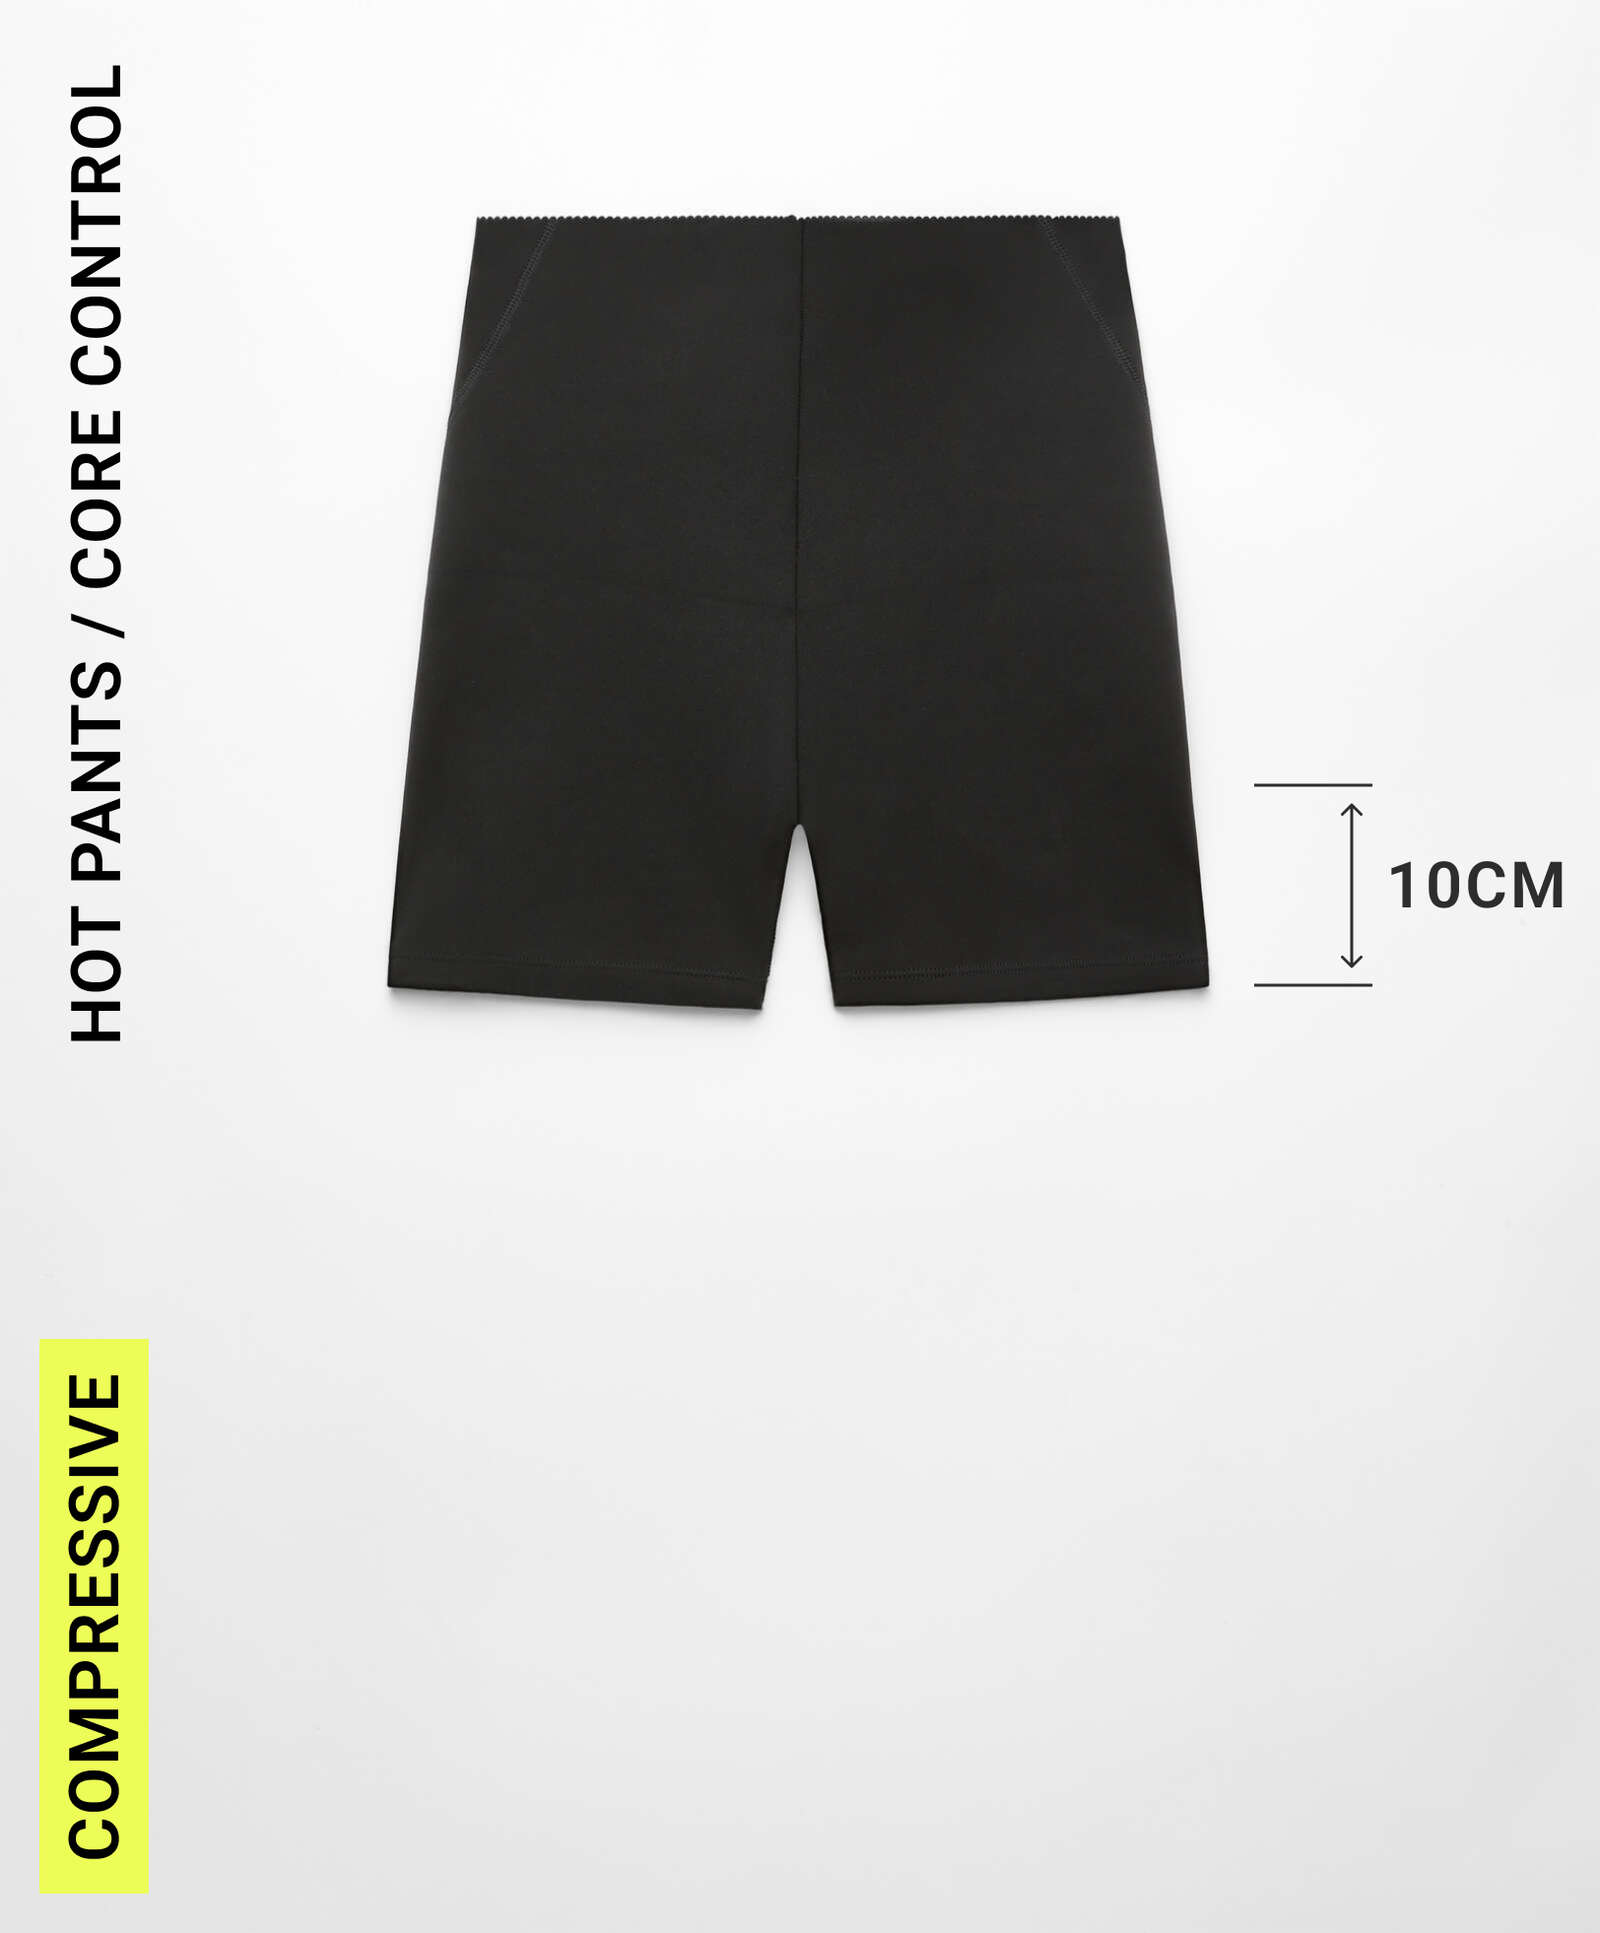 Compressive Core Control Hotpants, 10 cm